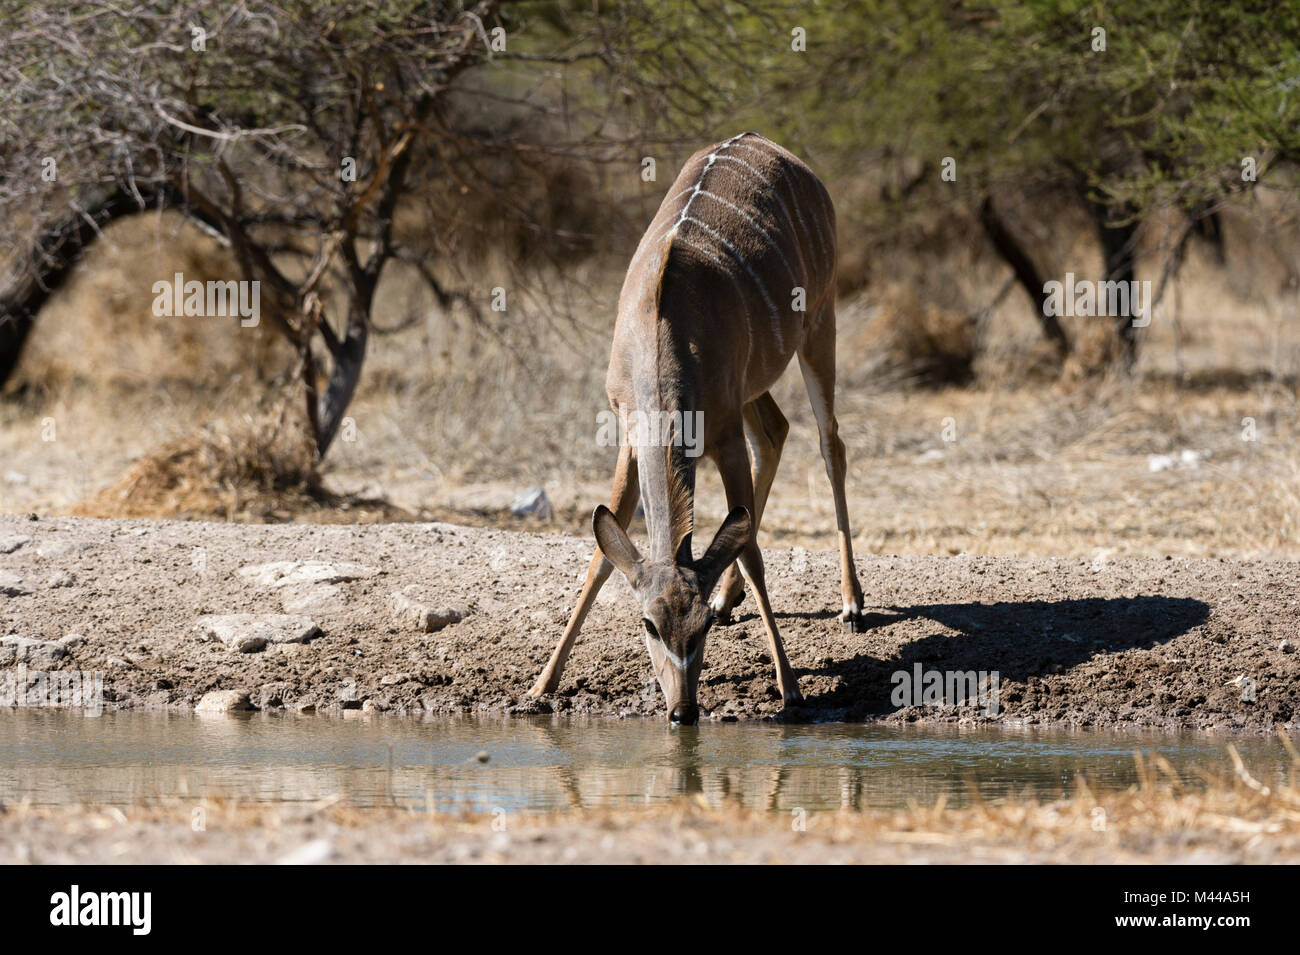 Greater kudu (Tragelaphus strepsiceros) drinking at watering hole, Kalahari, Botswana Stock Photo